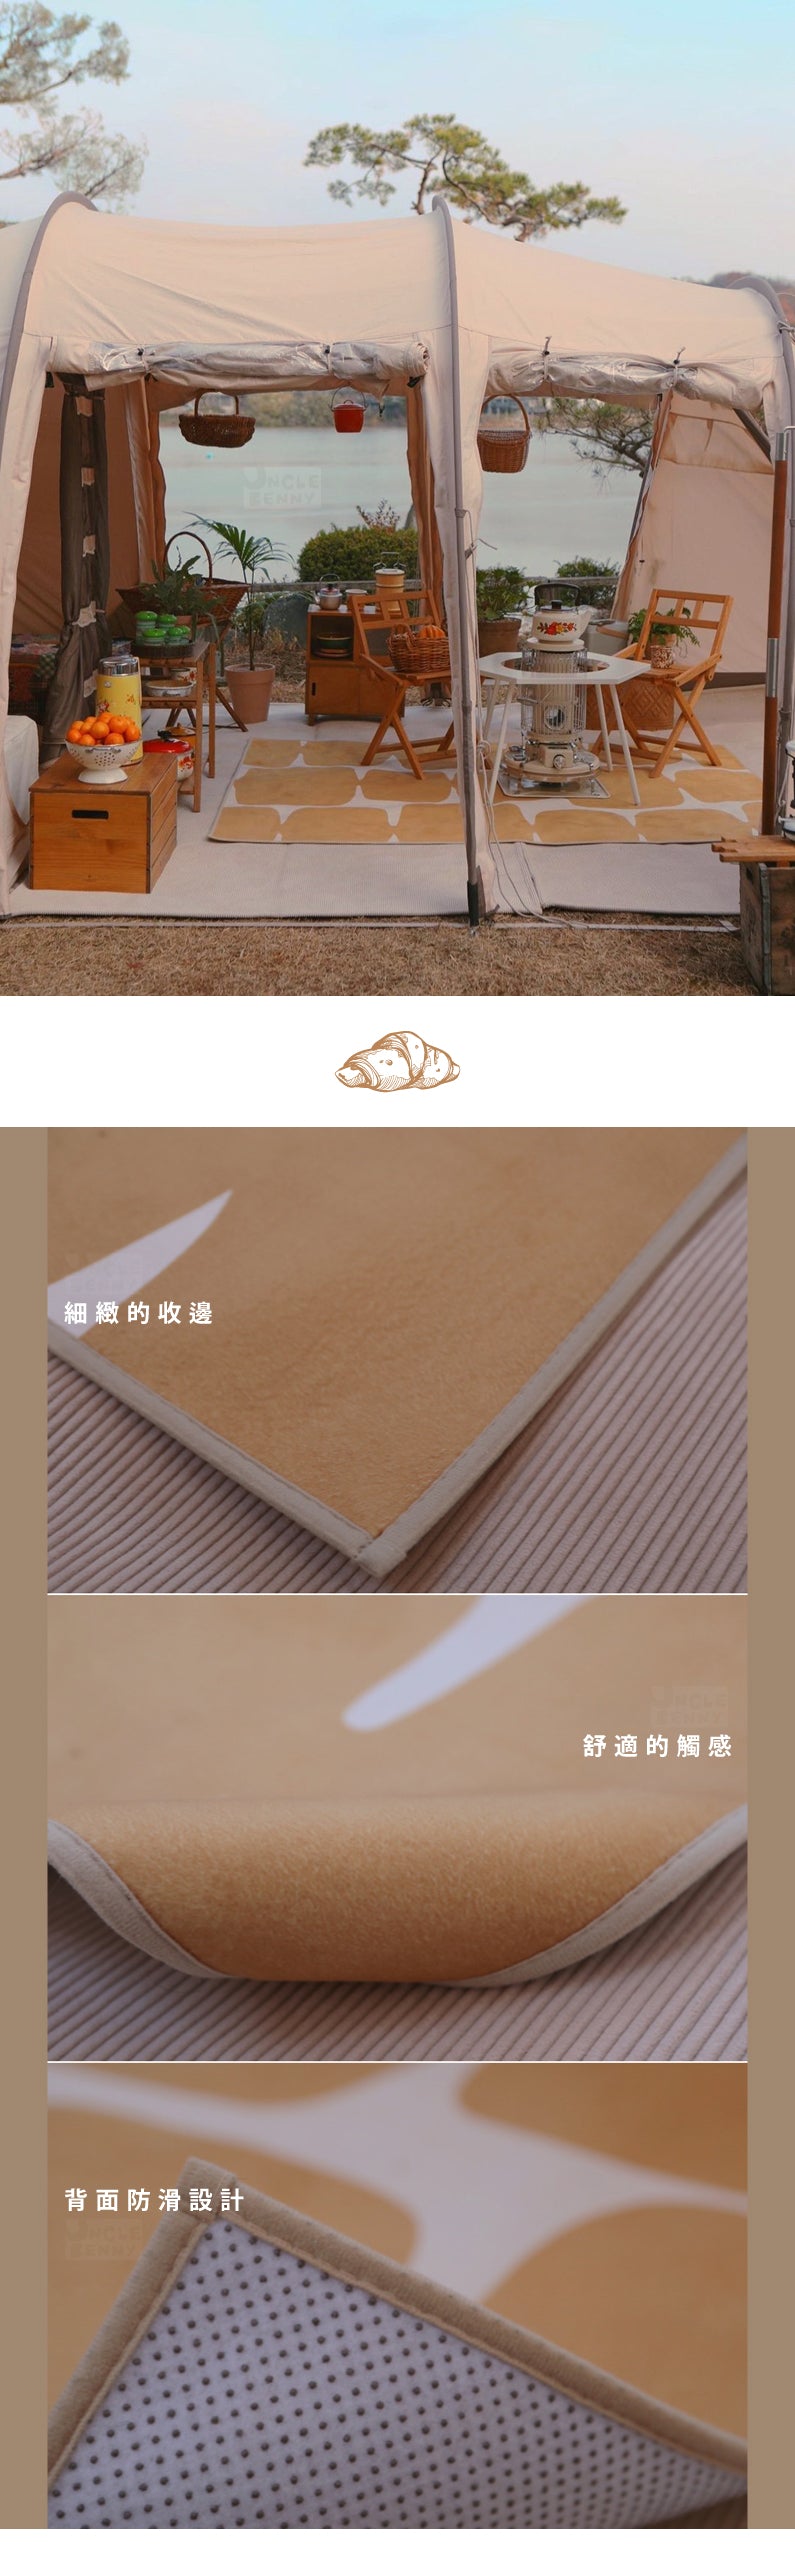 韓國月光下露營 韓國DALBITARE 慵懶烘焙坑系列地毯墊(奶油麵包/芝麻麵包/蜜桃餅乾 三種款式)